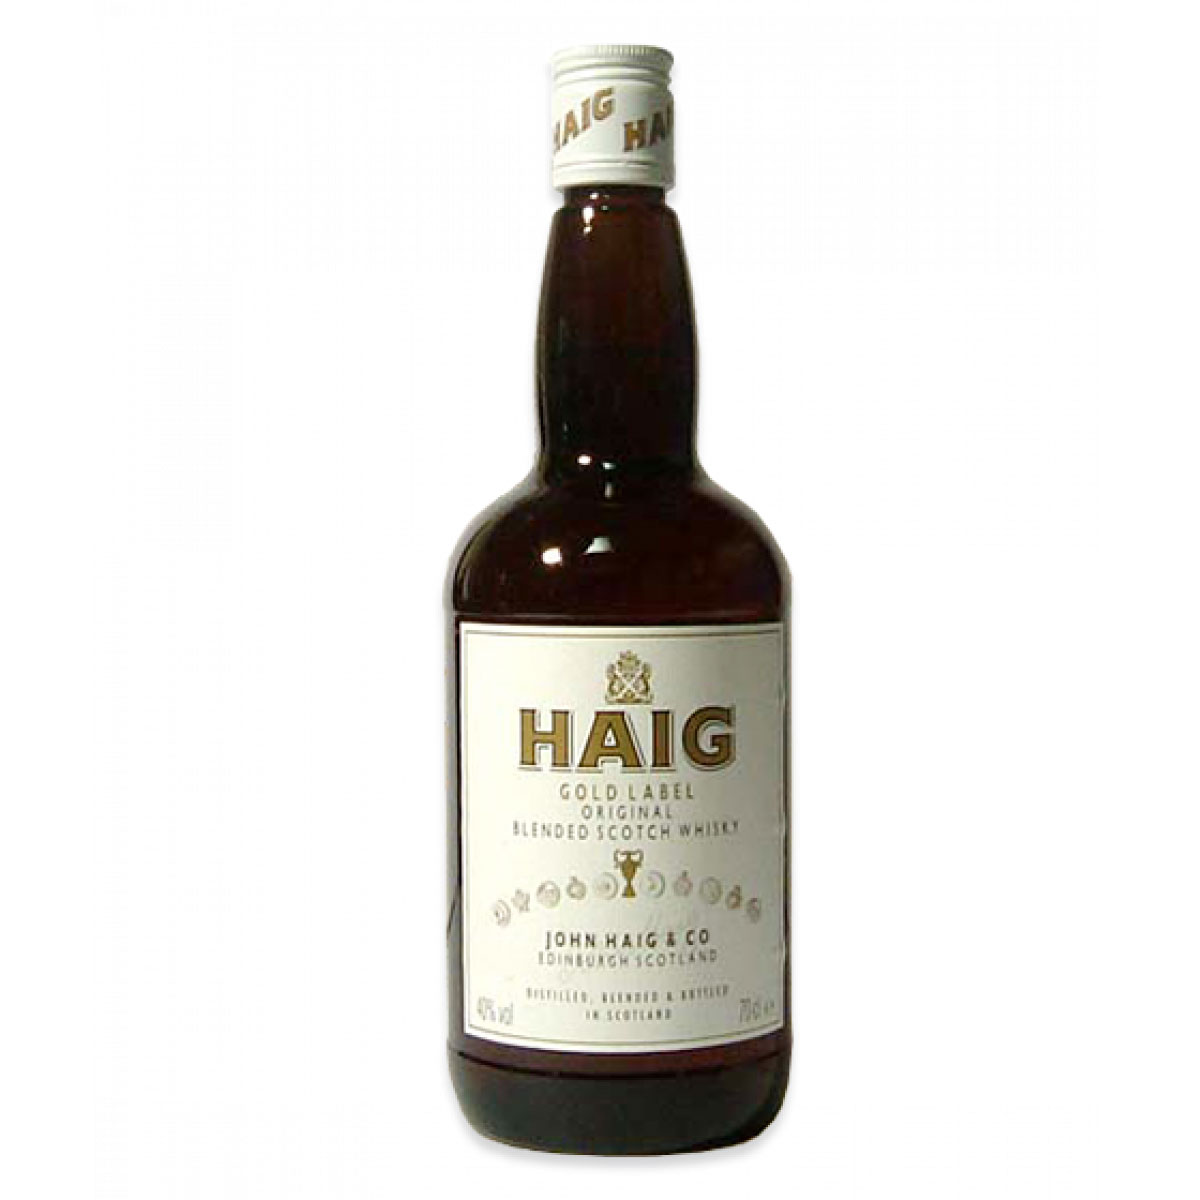 a bottle of haig whisky